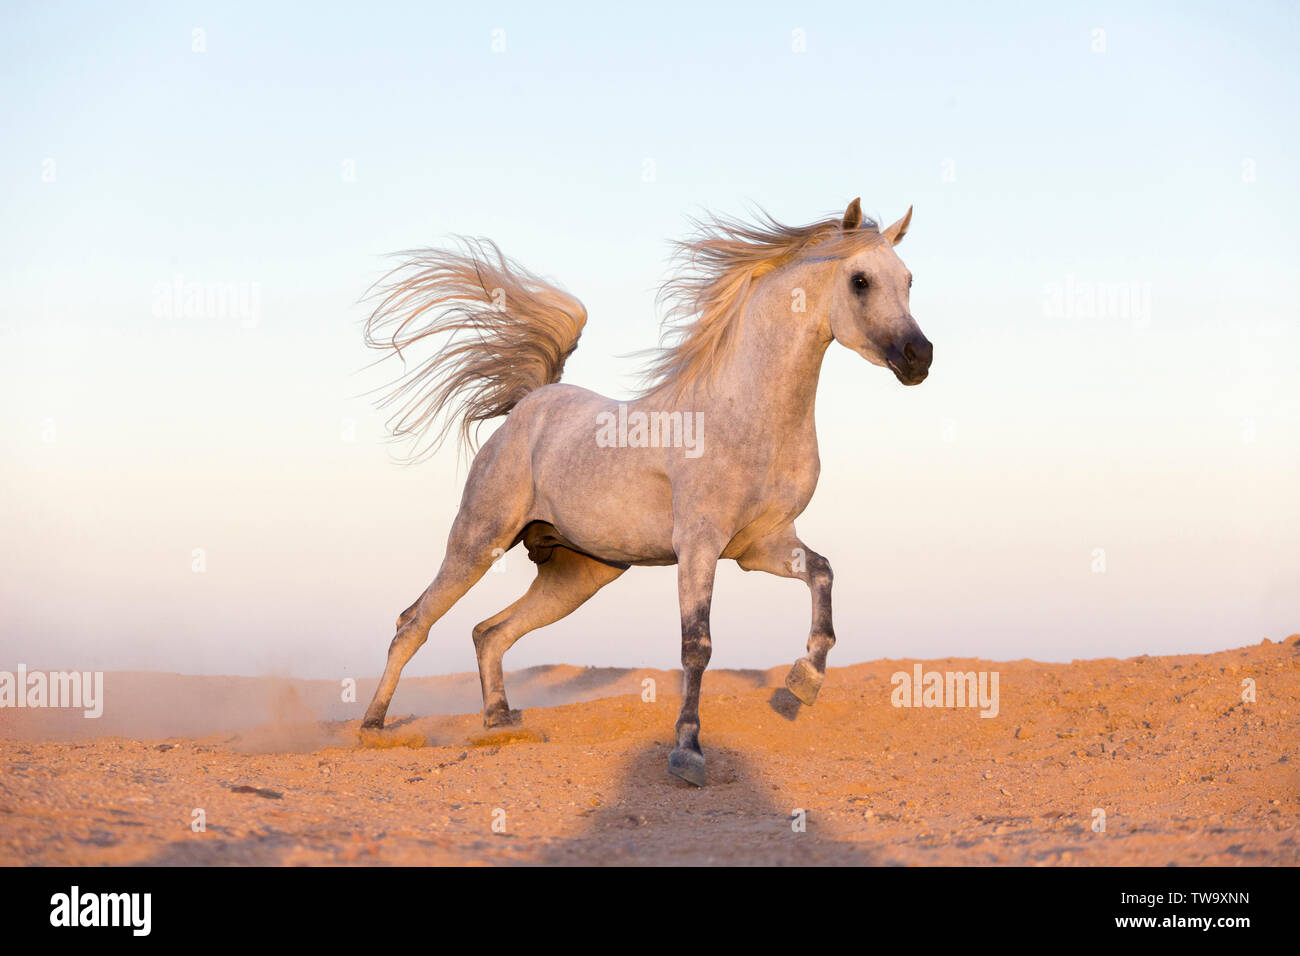 Arabian Horse. Gray stallion galloping in the desert. Egypt Stock Photo -  Alamy